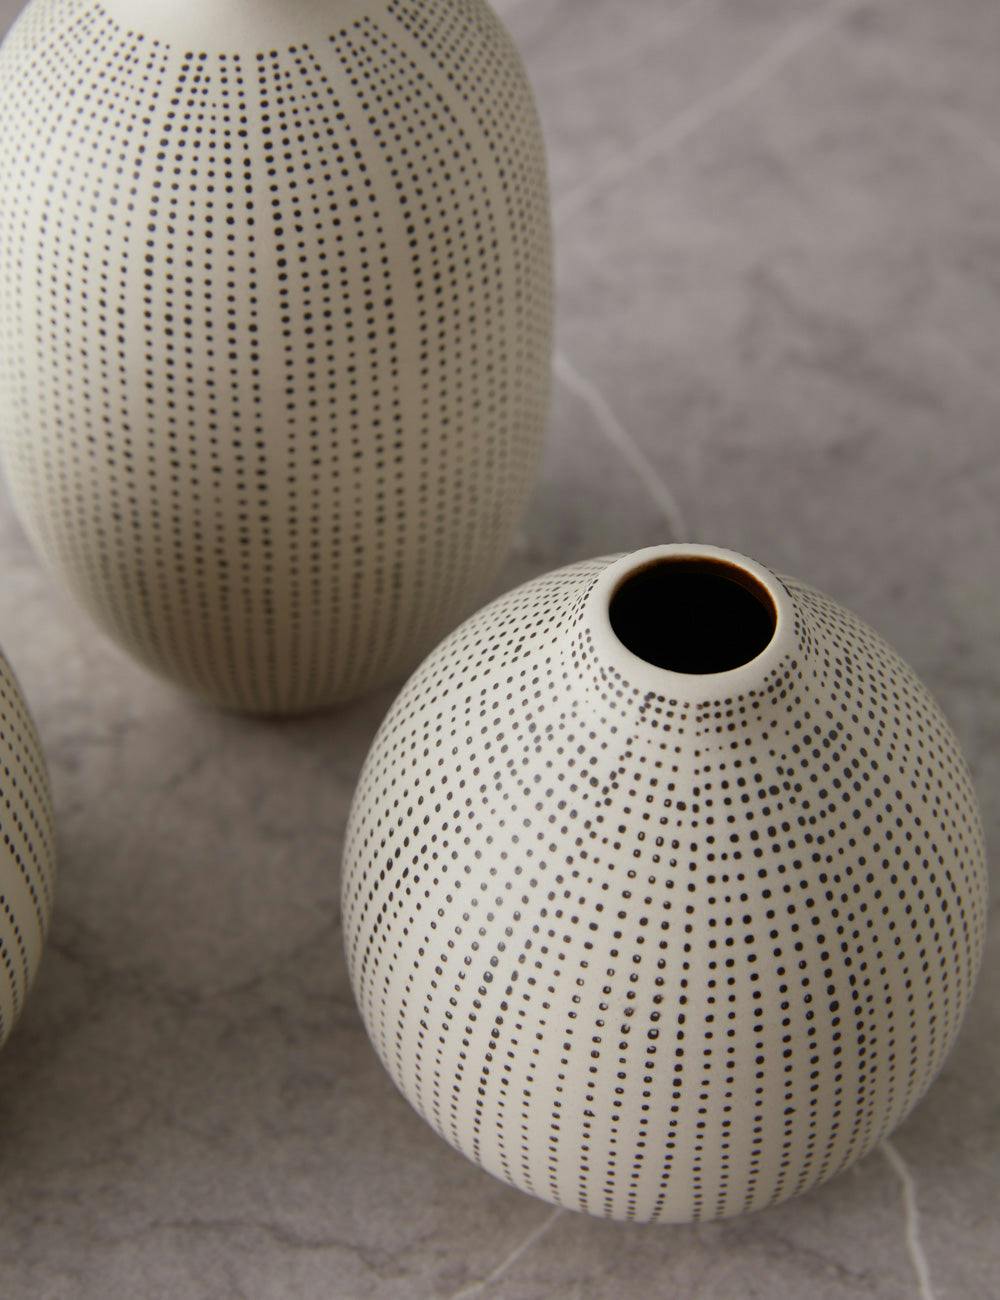 Mercado White Stoneware with Black Polka Dots Vases Set of 3